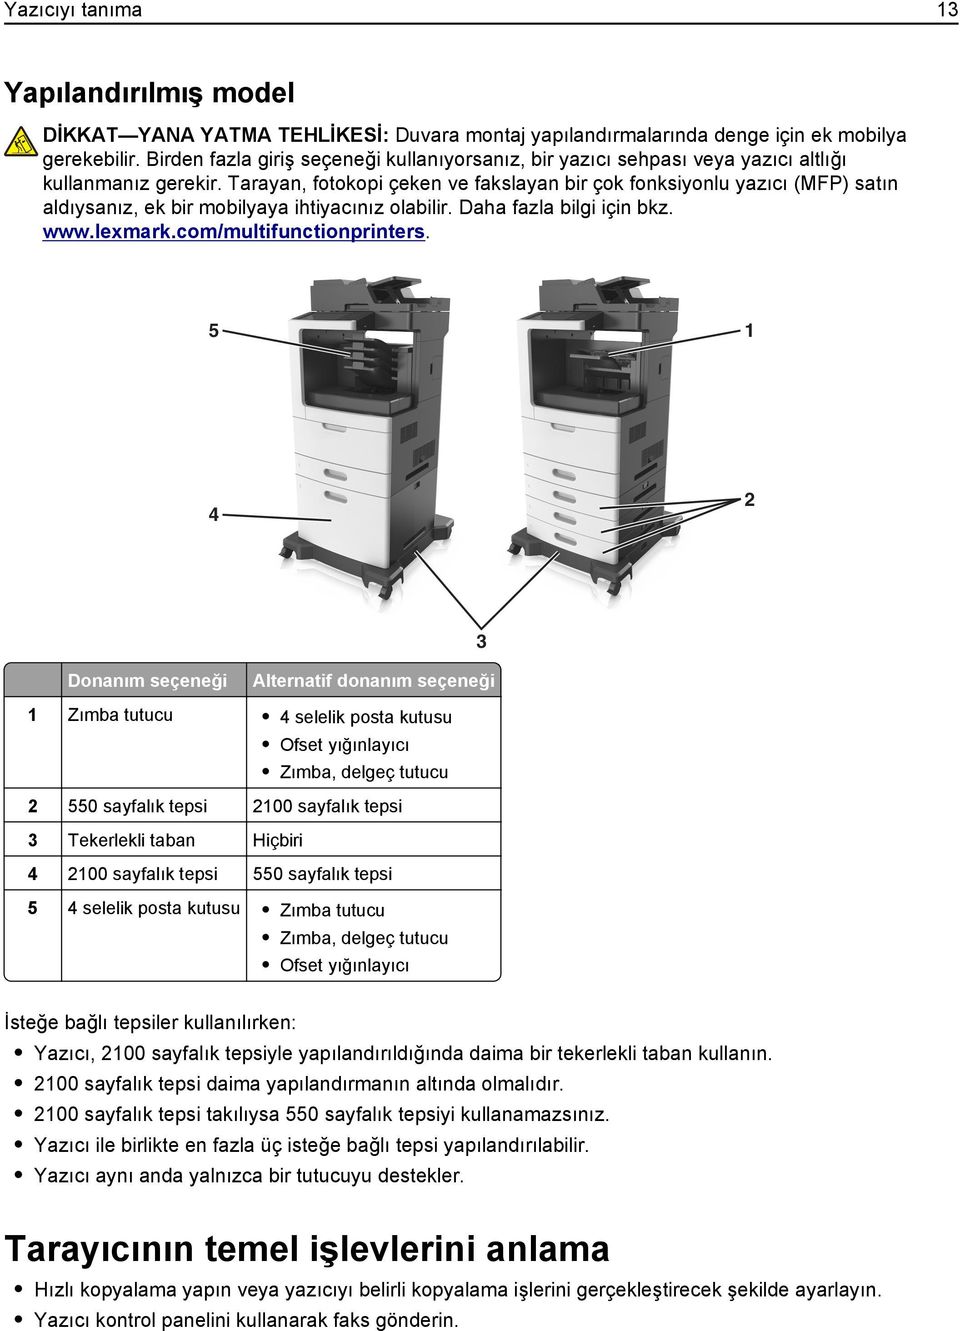 Tarayan, fotokopi çeken ve fakslayan bir çok fonksiyonlu yazıcı (MFP) satın aldıysanız, ek bir mobilyaya ihtiyacınız olabilir. Daha fazla bilgi için bkz. www.lexmark.com/multifunctionprinters.